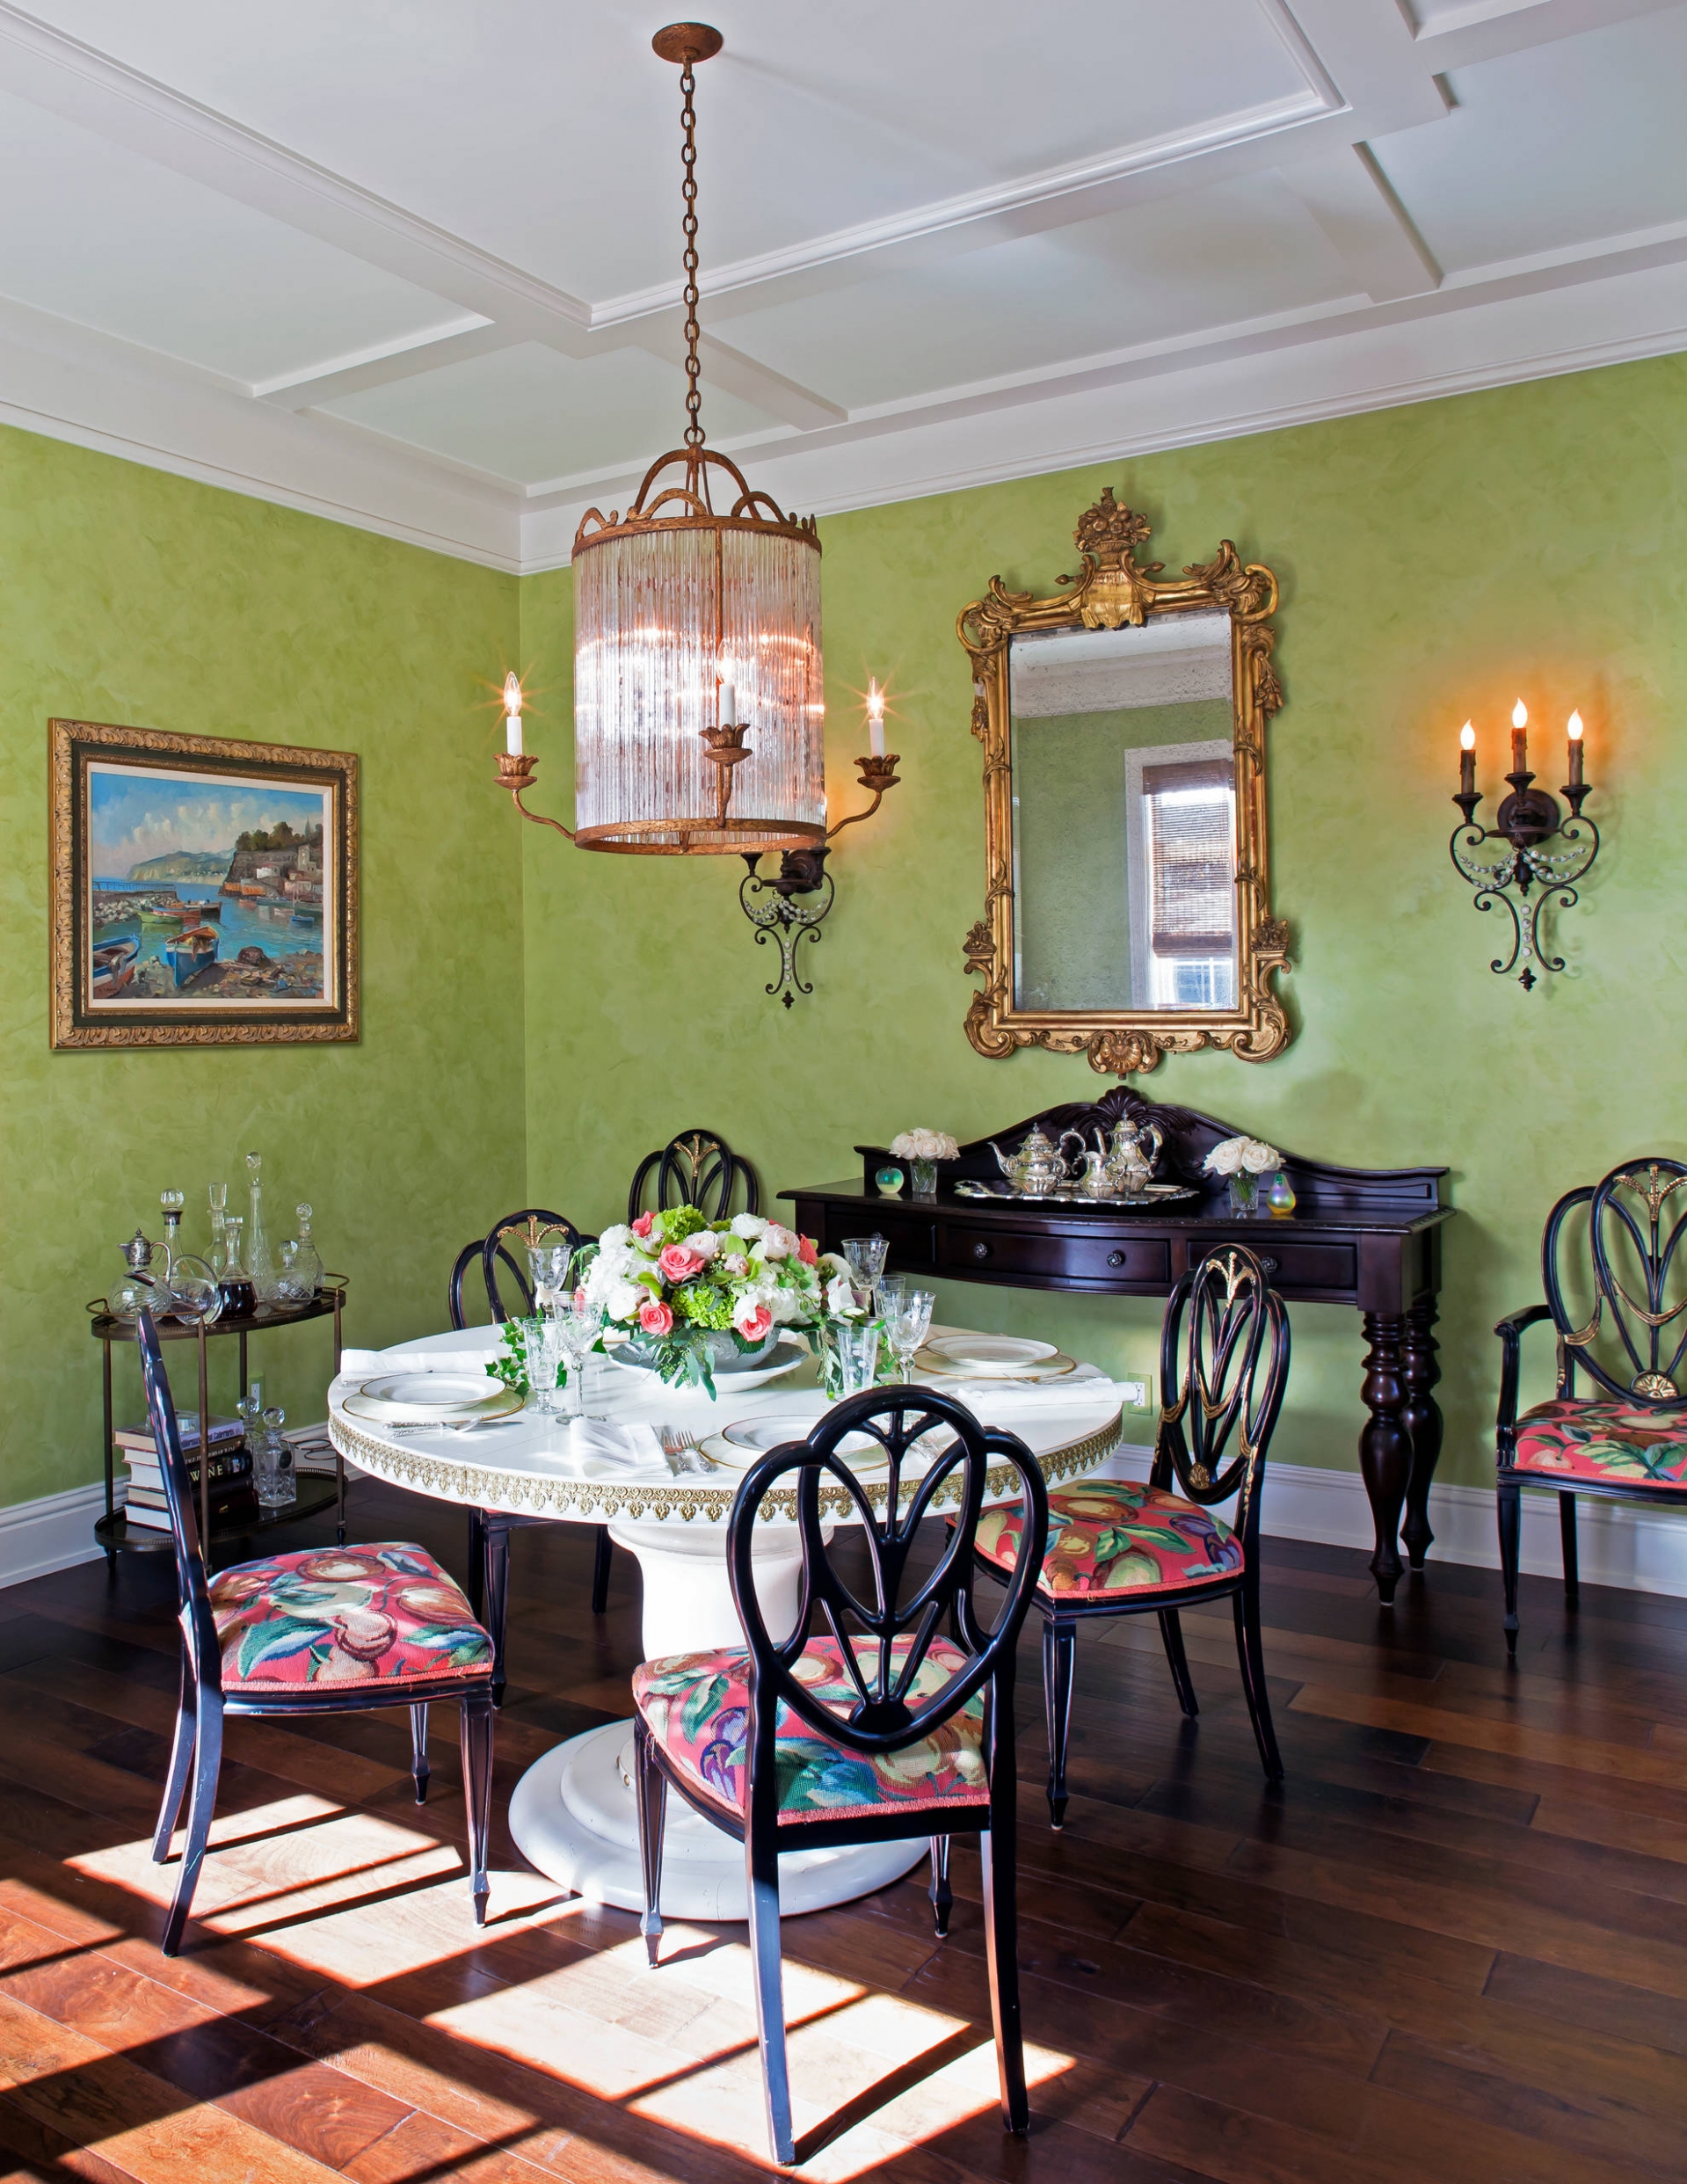 Căn phòng với với bức tường màu xanh lá cây cùng nội thất thiết kế truyền thống, kết hợp ánh sáng tự nhiên vô cùng thông thoáng.